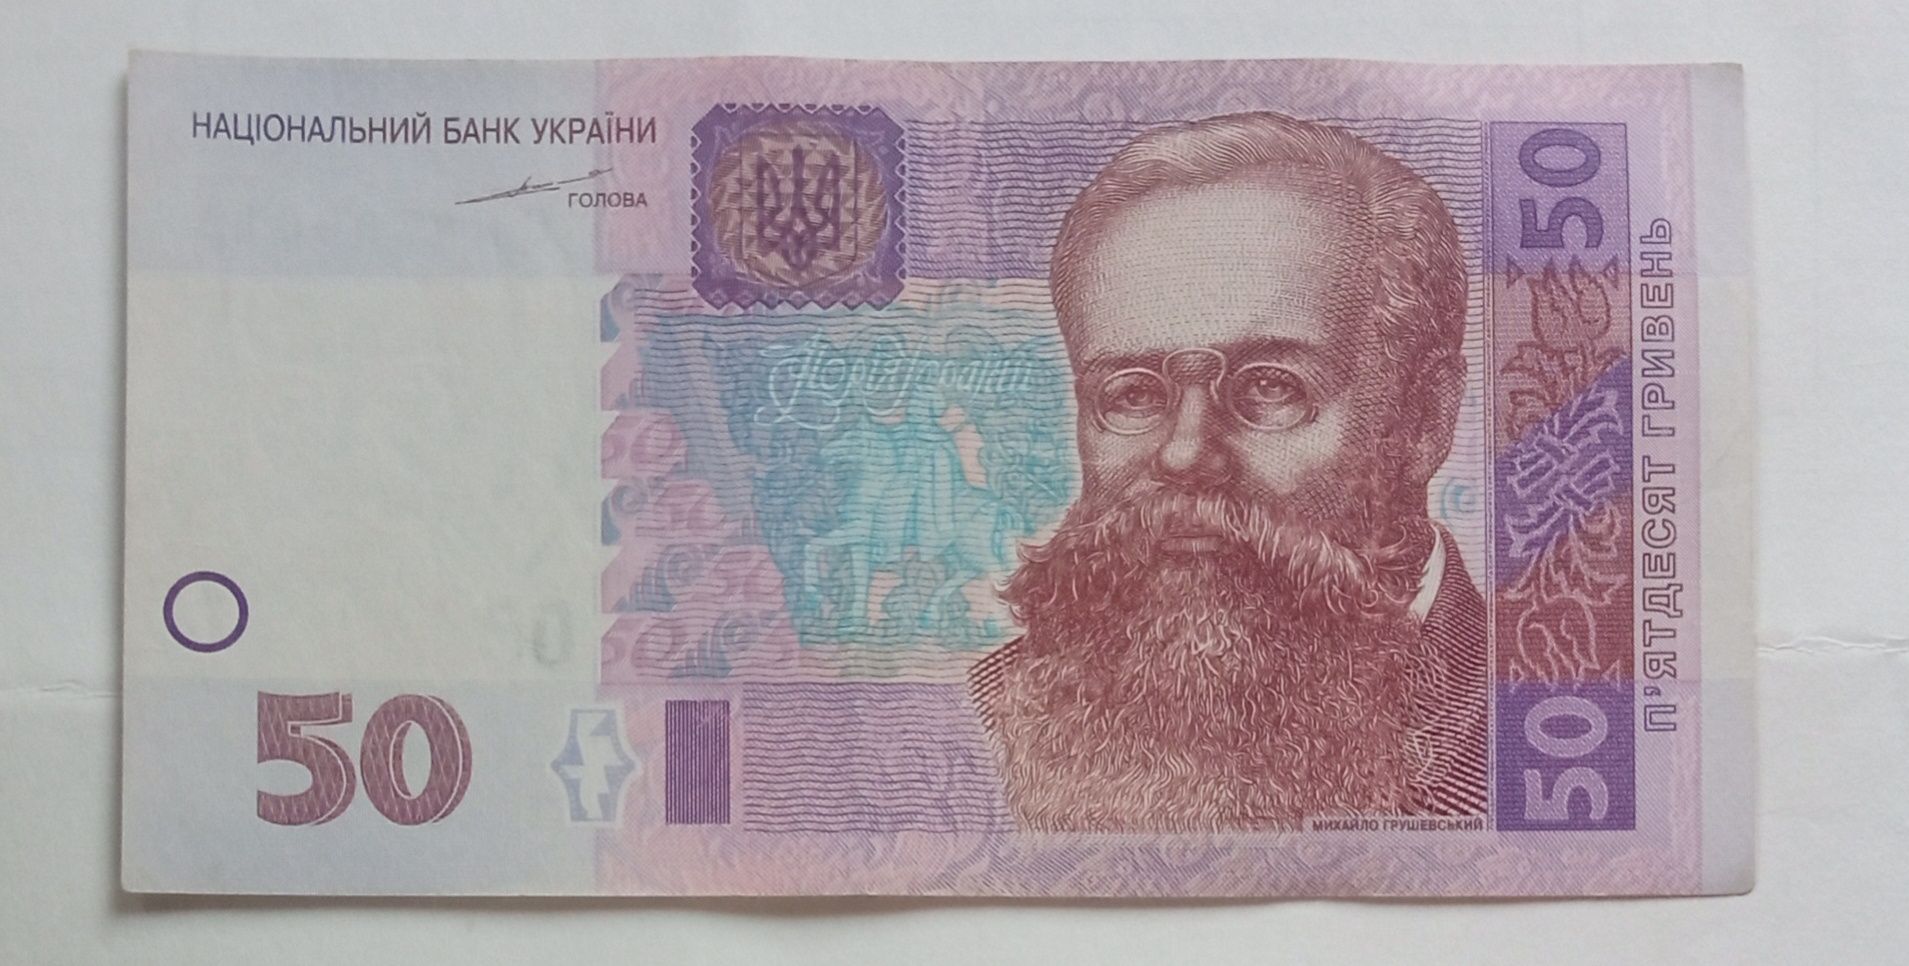 50 гривень 2004 года+2005 года